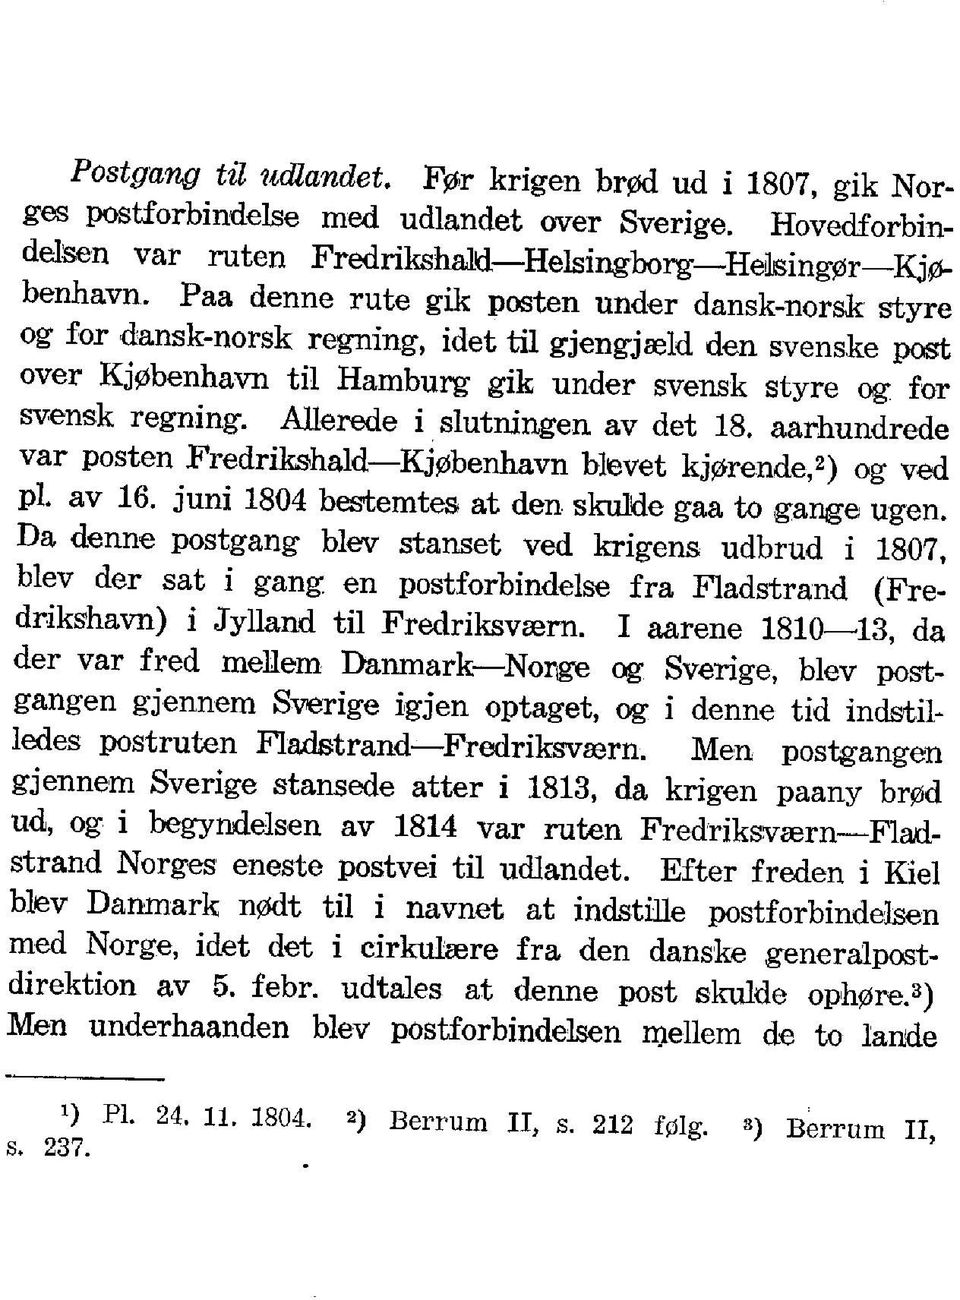 Allerede i slutningen av det 18. aarhundrede var posten Fredrikshald Kj0benhavn blevet kj0rende,2) og ved pi. av 16. juni 1804 bestemtes at den skulde gaa to gange ugen.